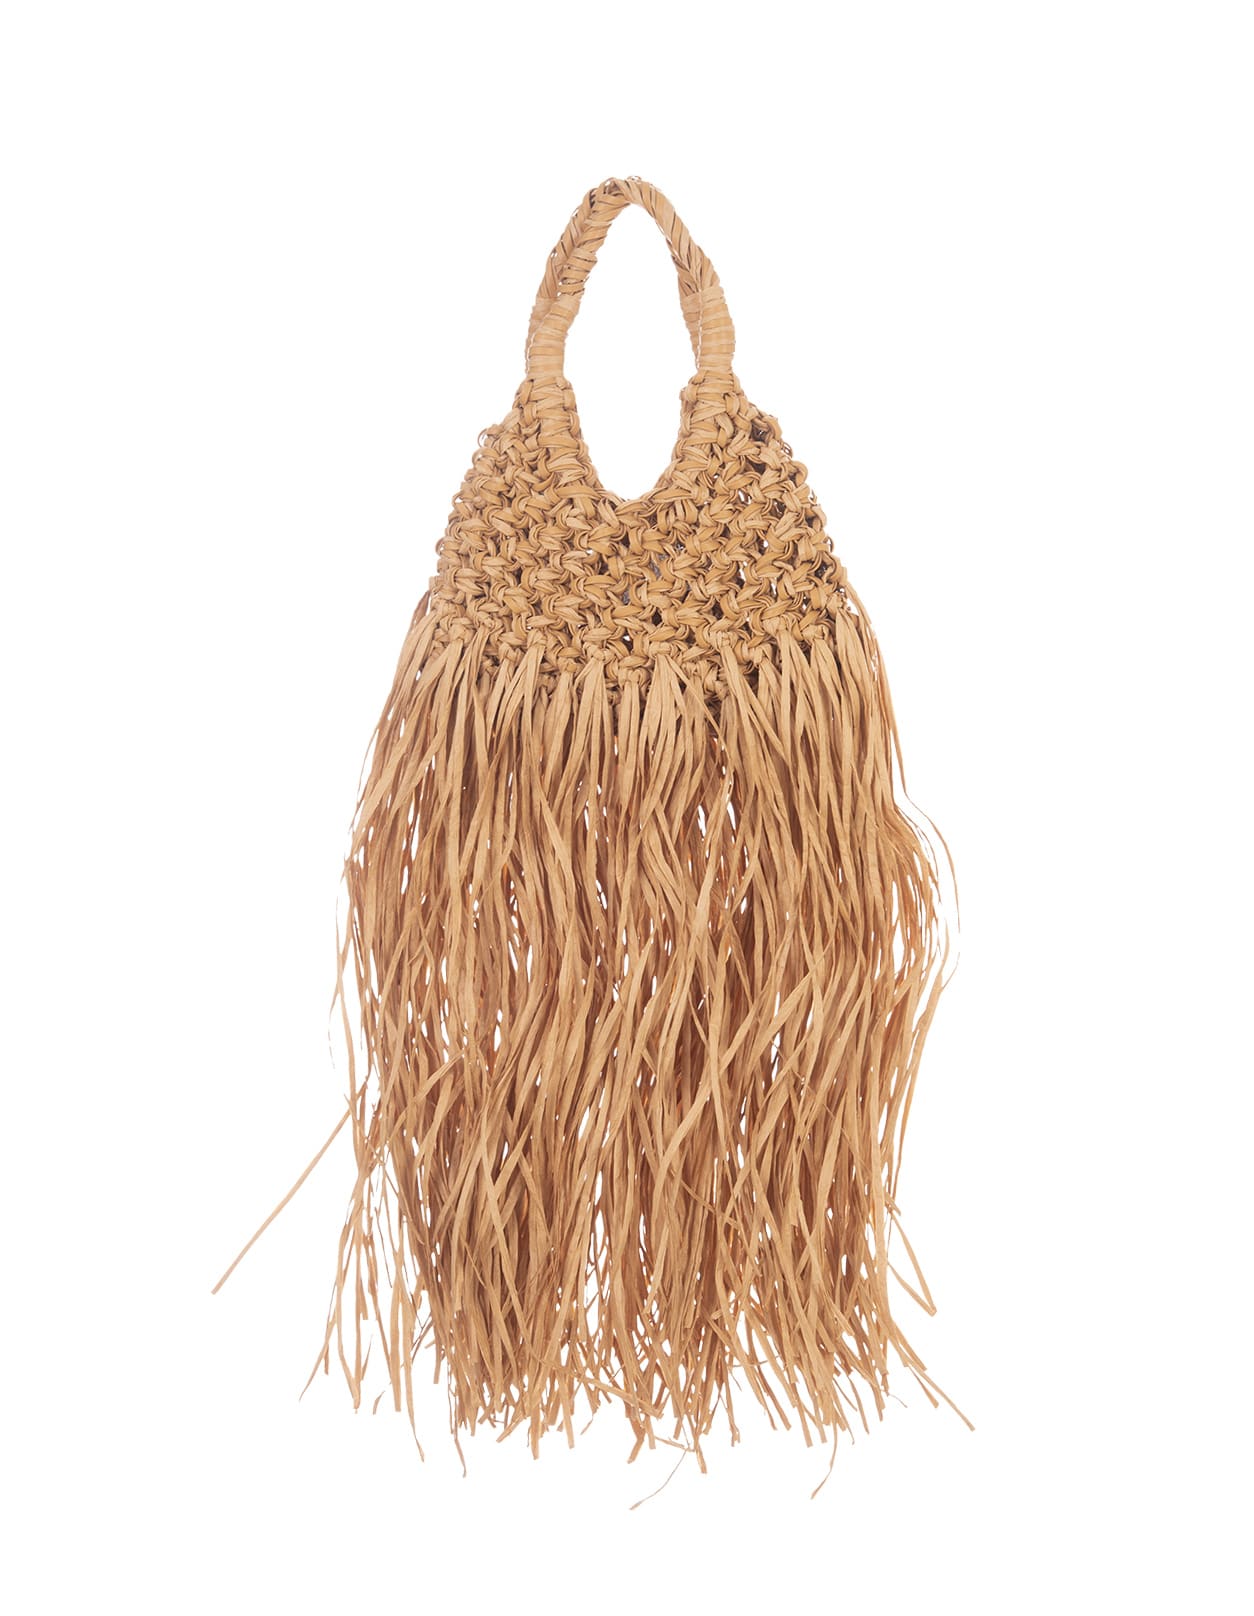 Vannifique Bag In Natural Raffia With Fringes